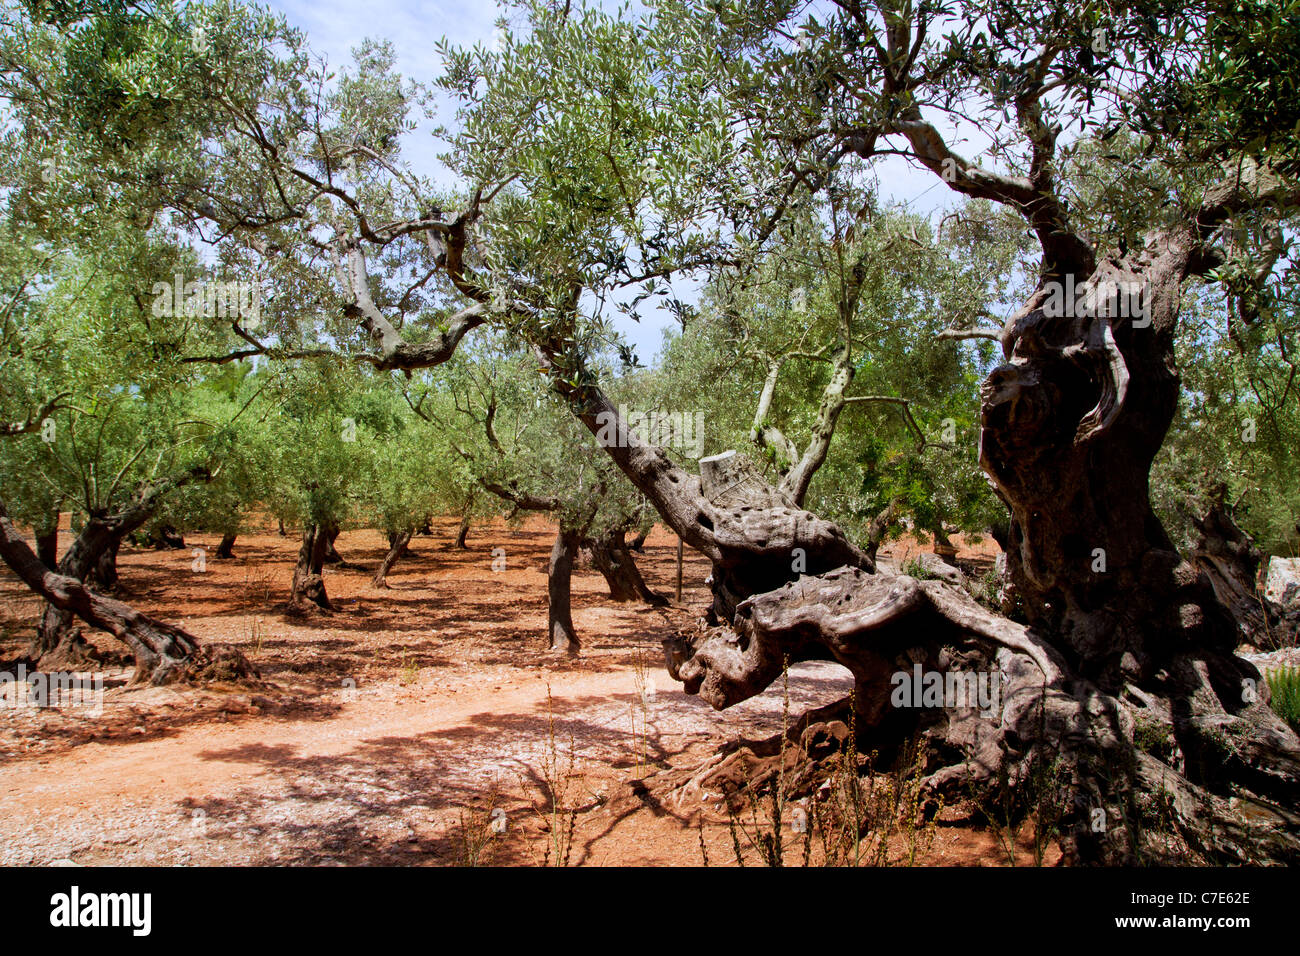 Olivi da Maiorca con rosso argilla del suolo da isole Baleari in Spagna Foto Stock